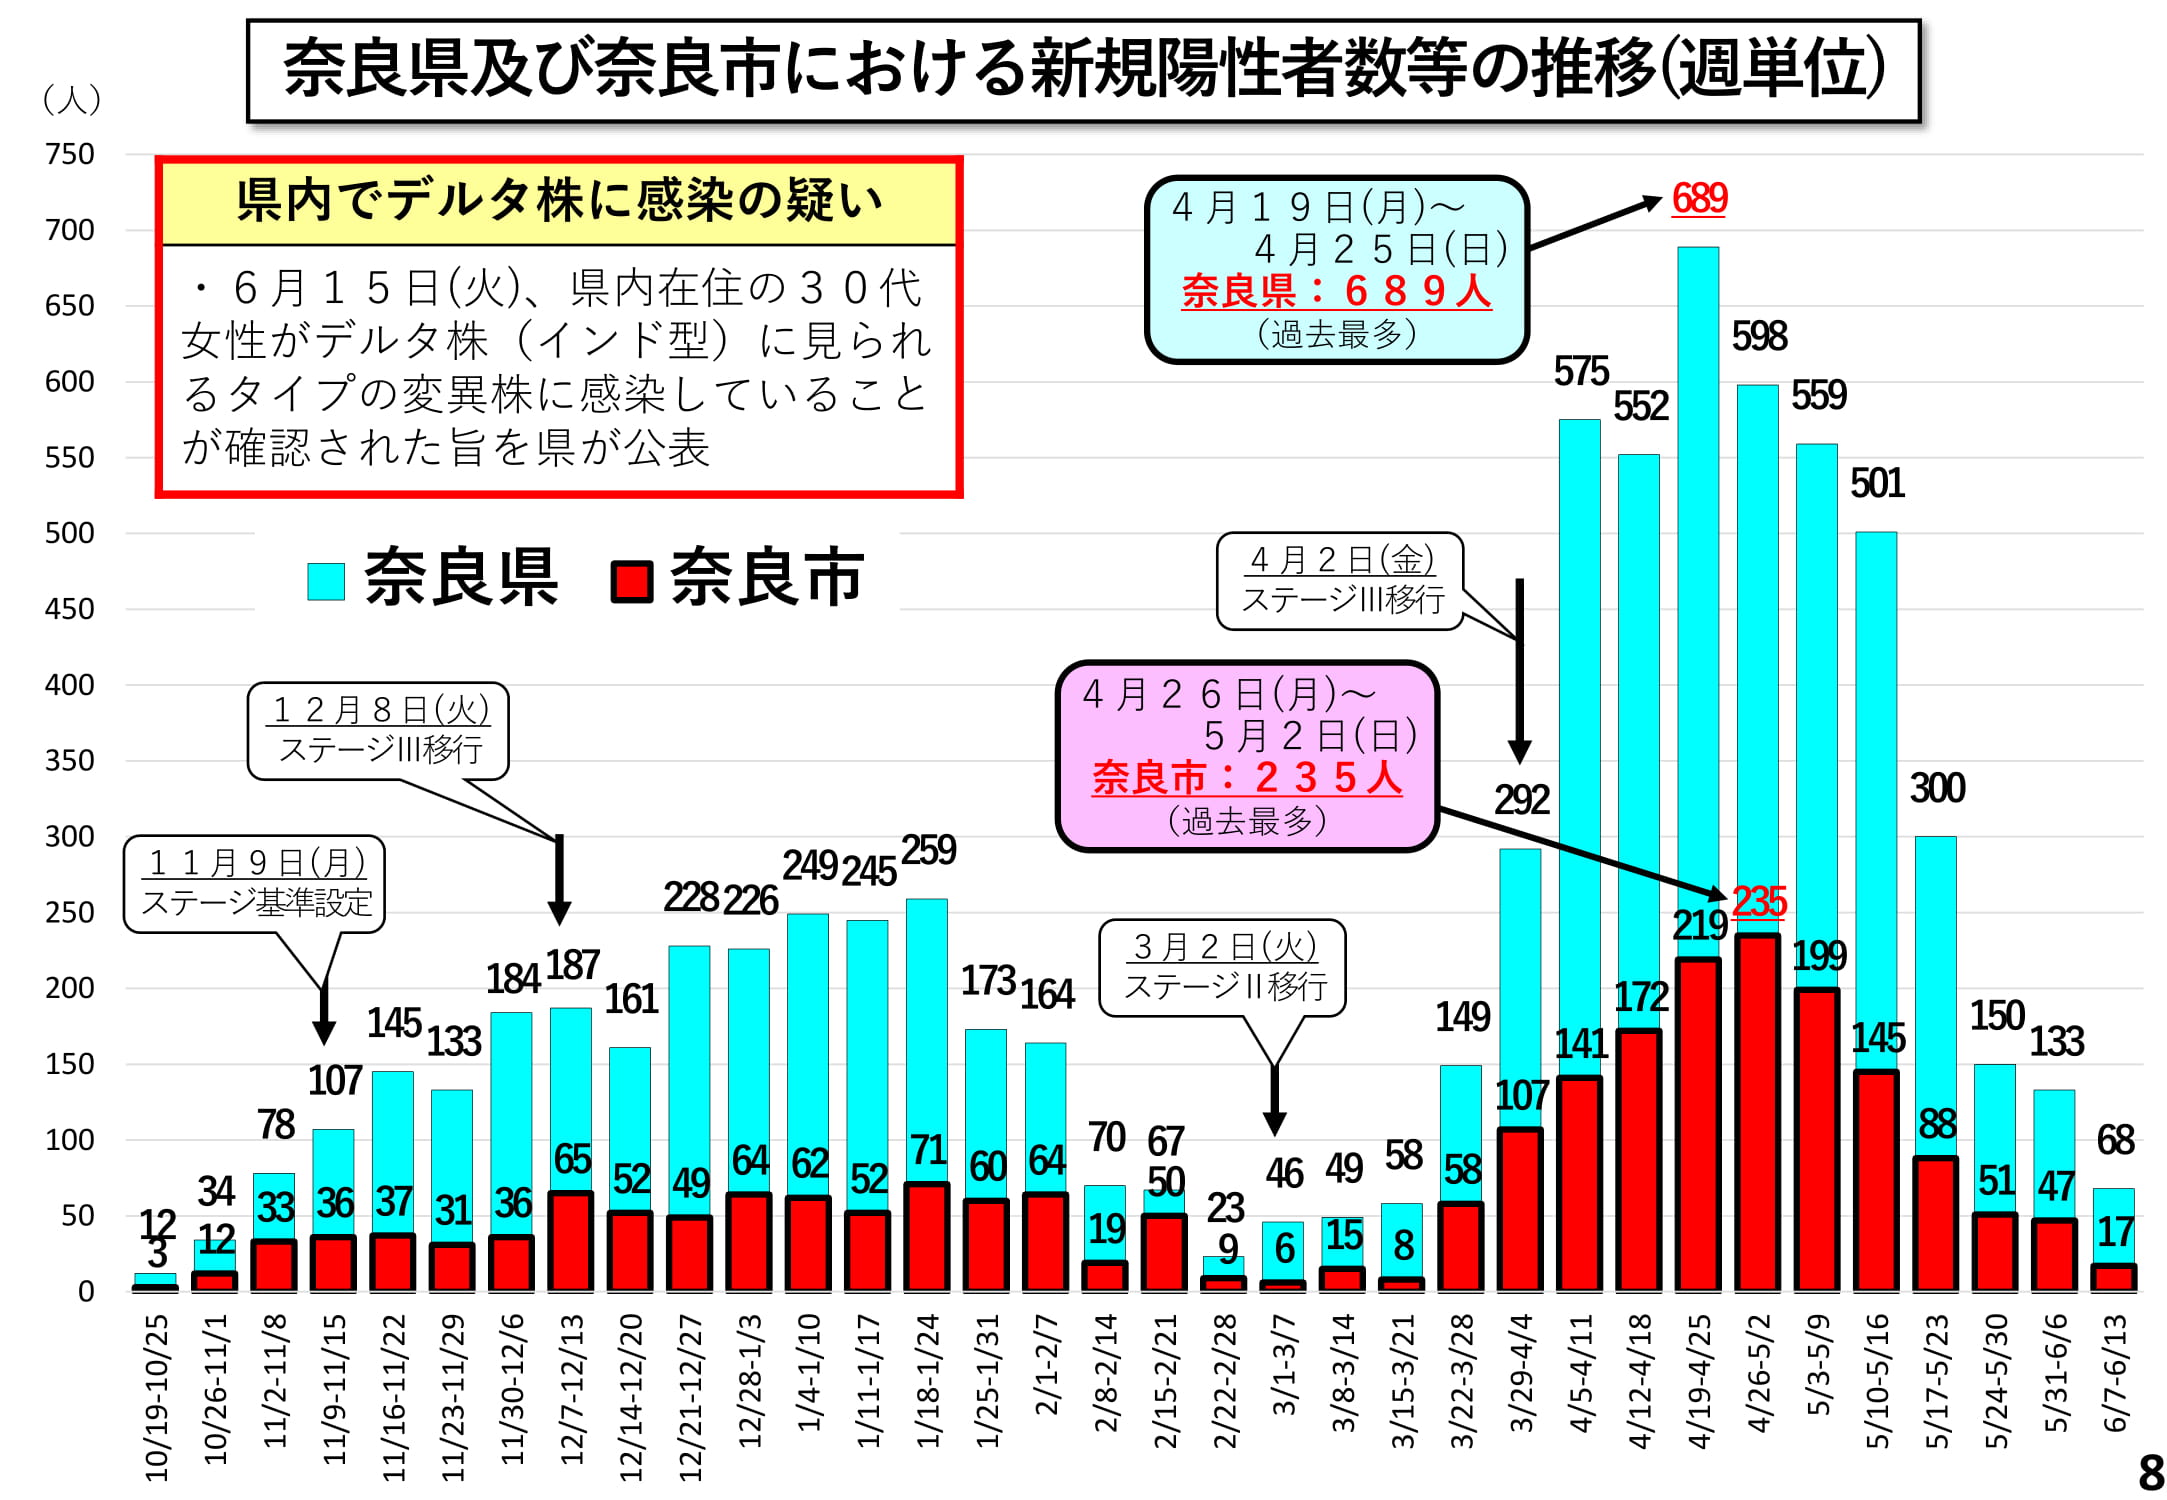 奈良県内及び奈良市における新規陽性者数等の推移(週単位)